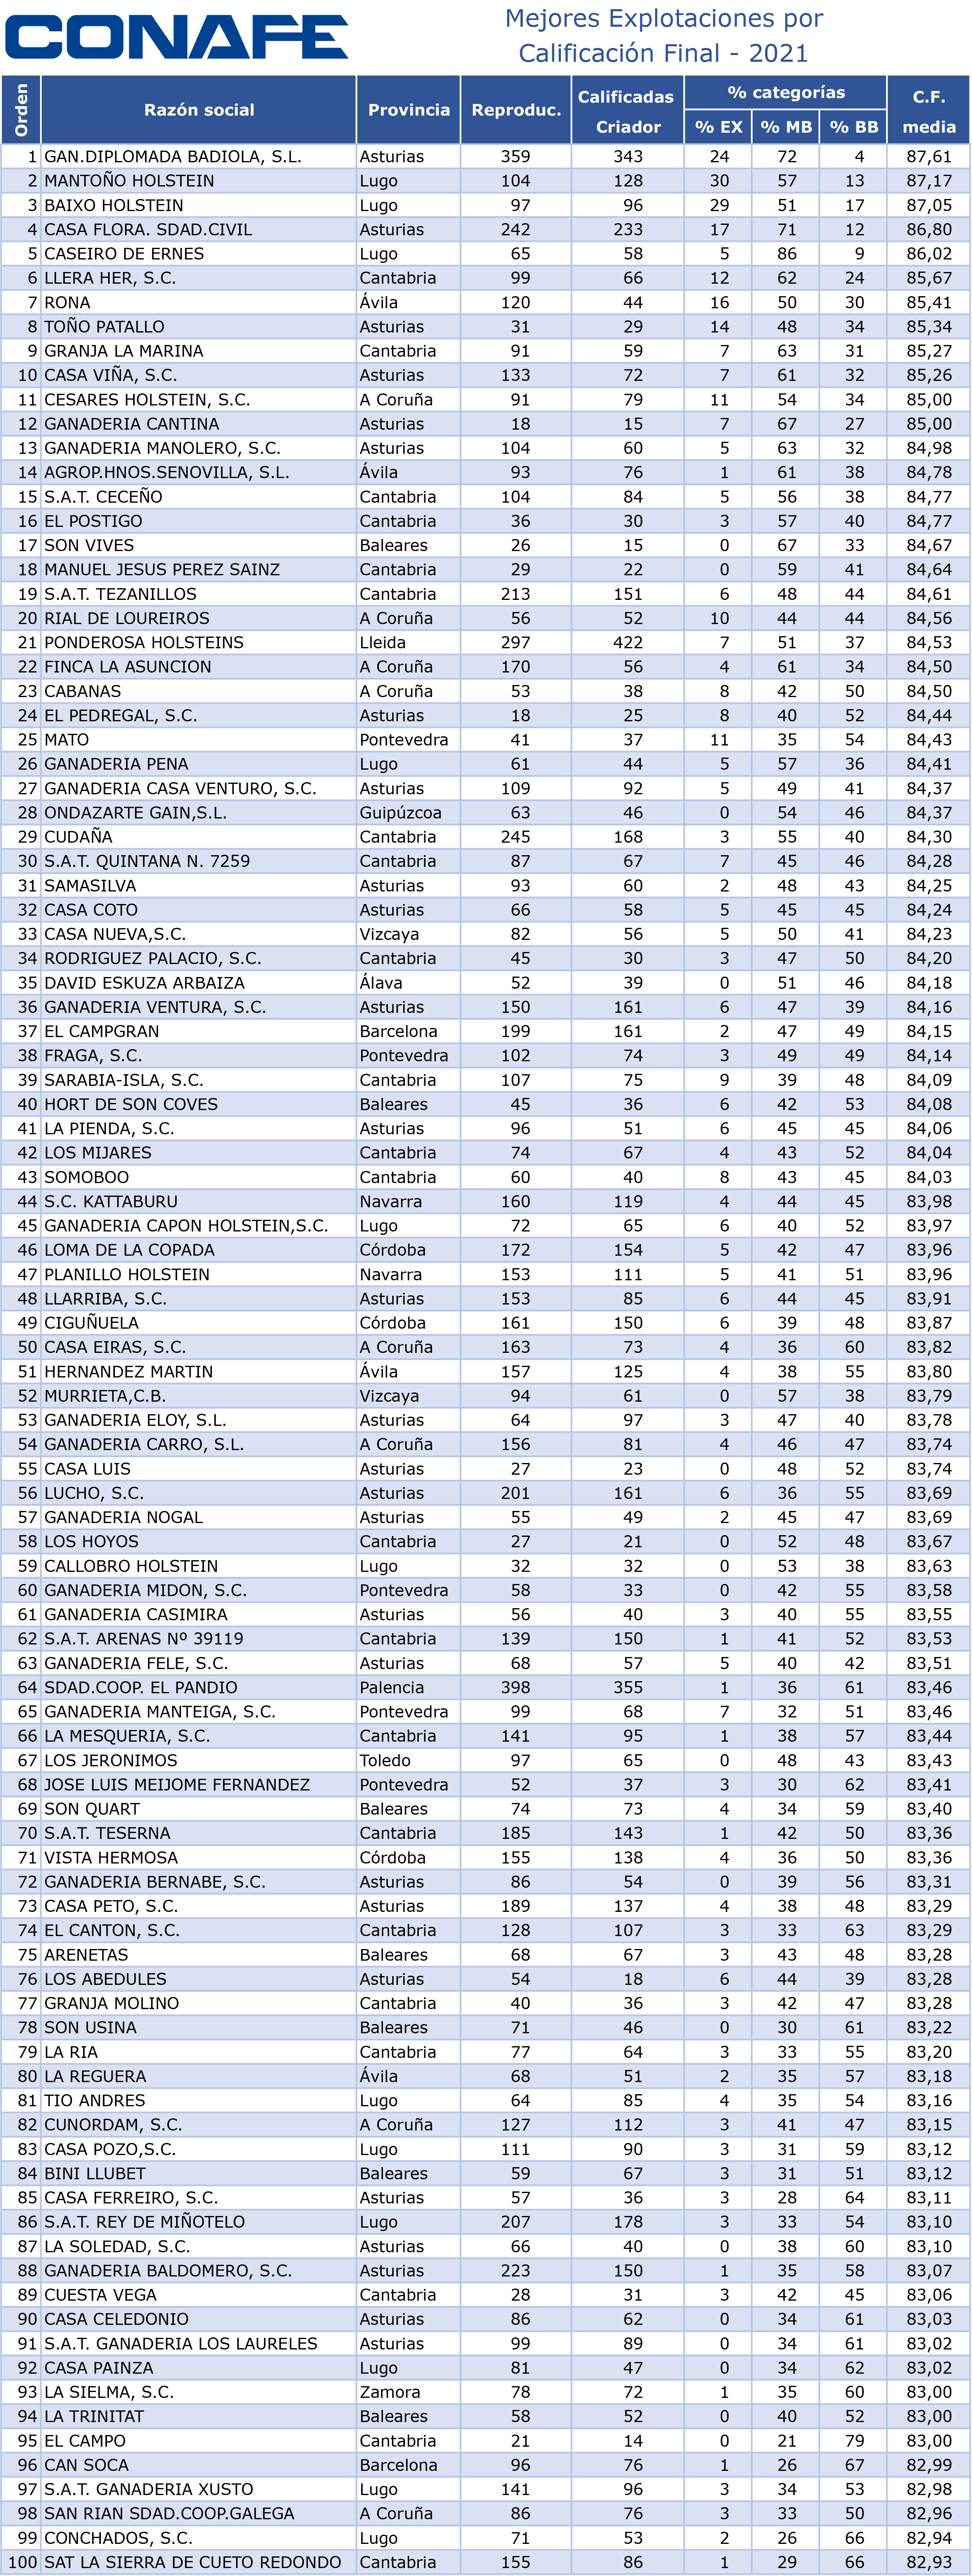 100 Mejores Explotaciones por Calificacion_corregido_para pdf.xl